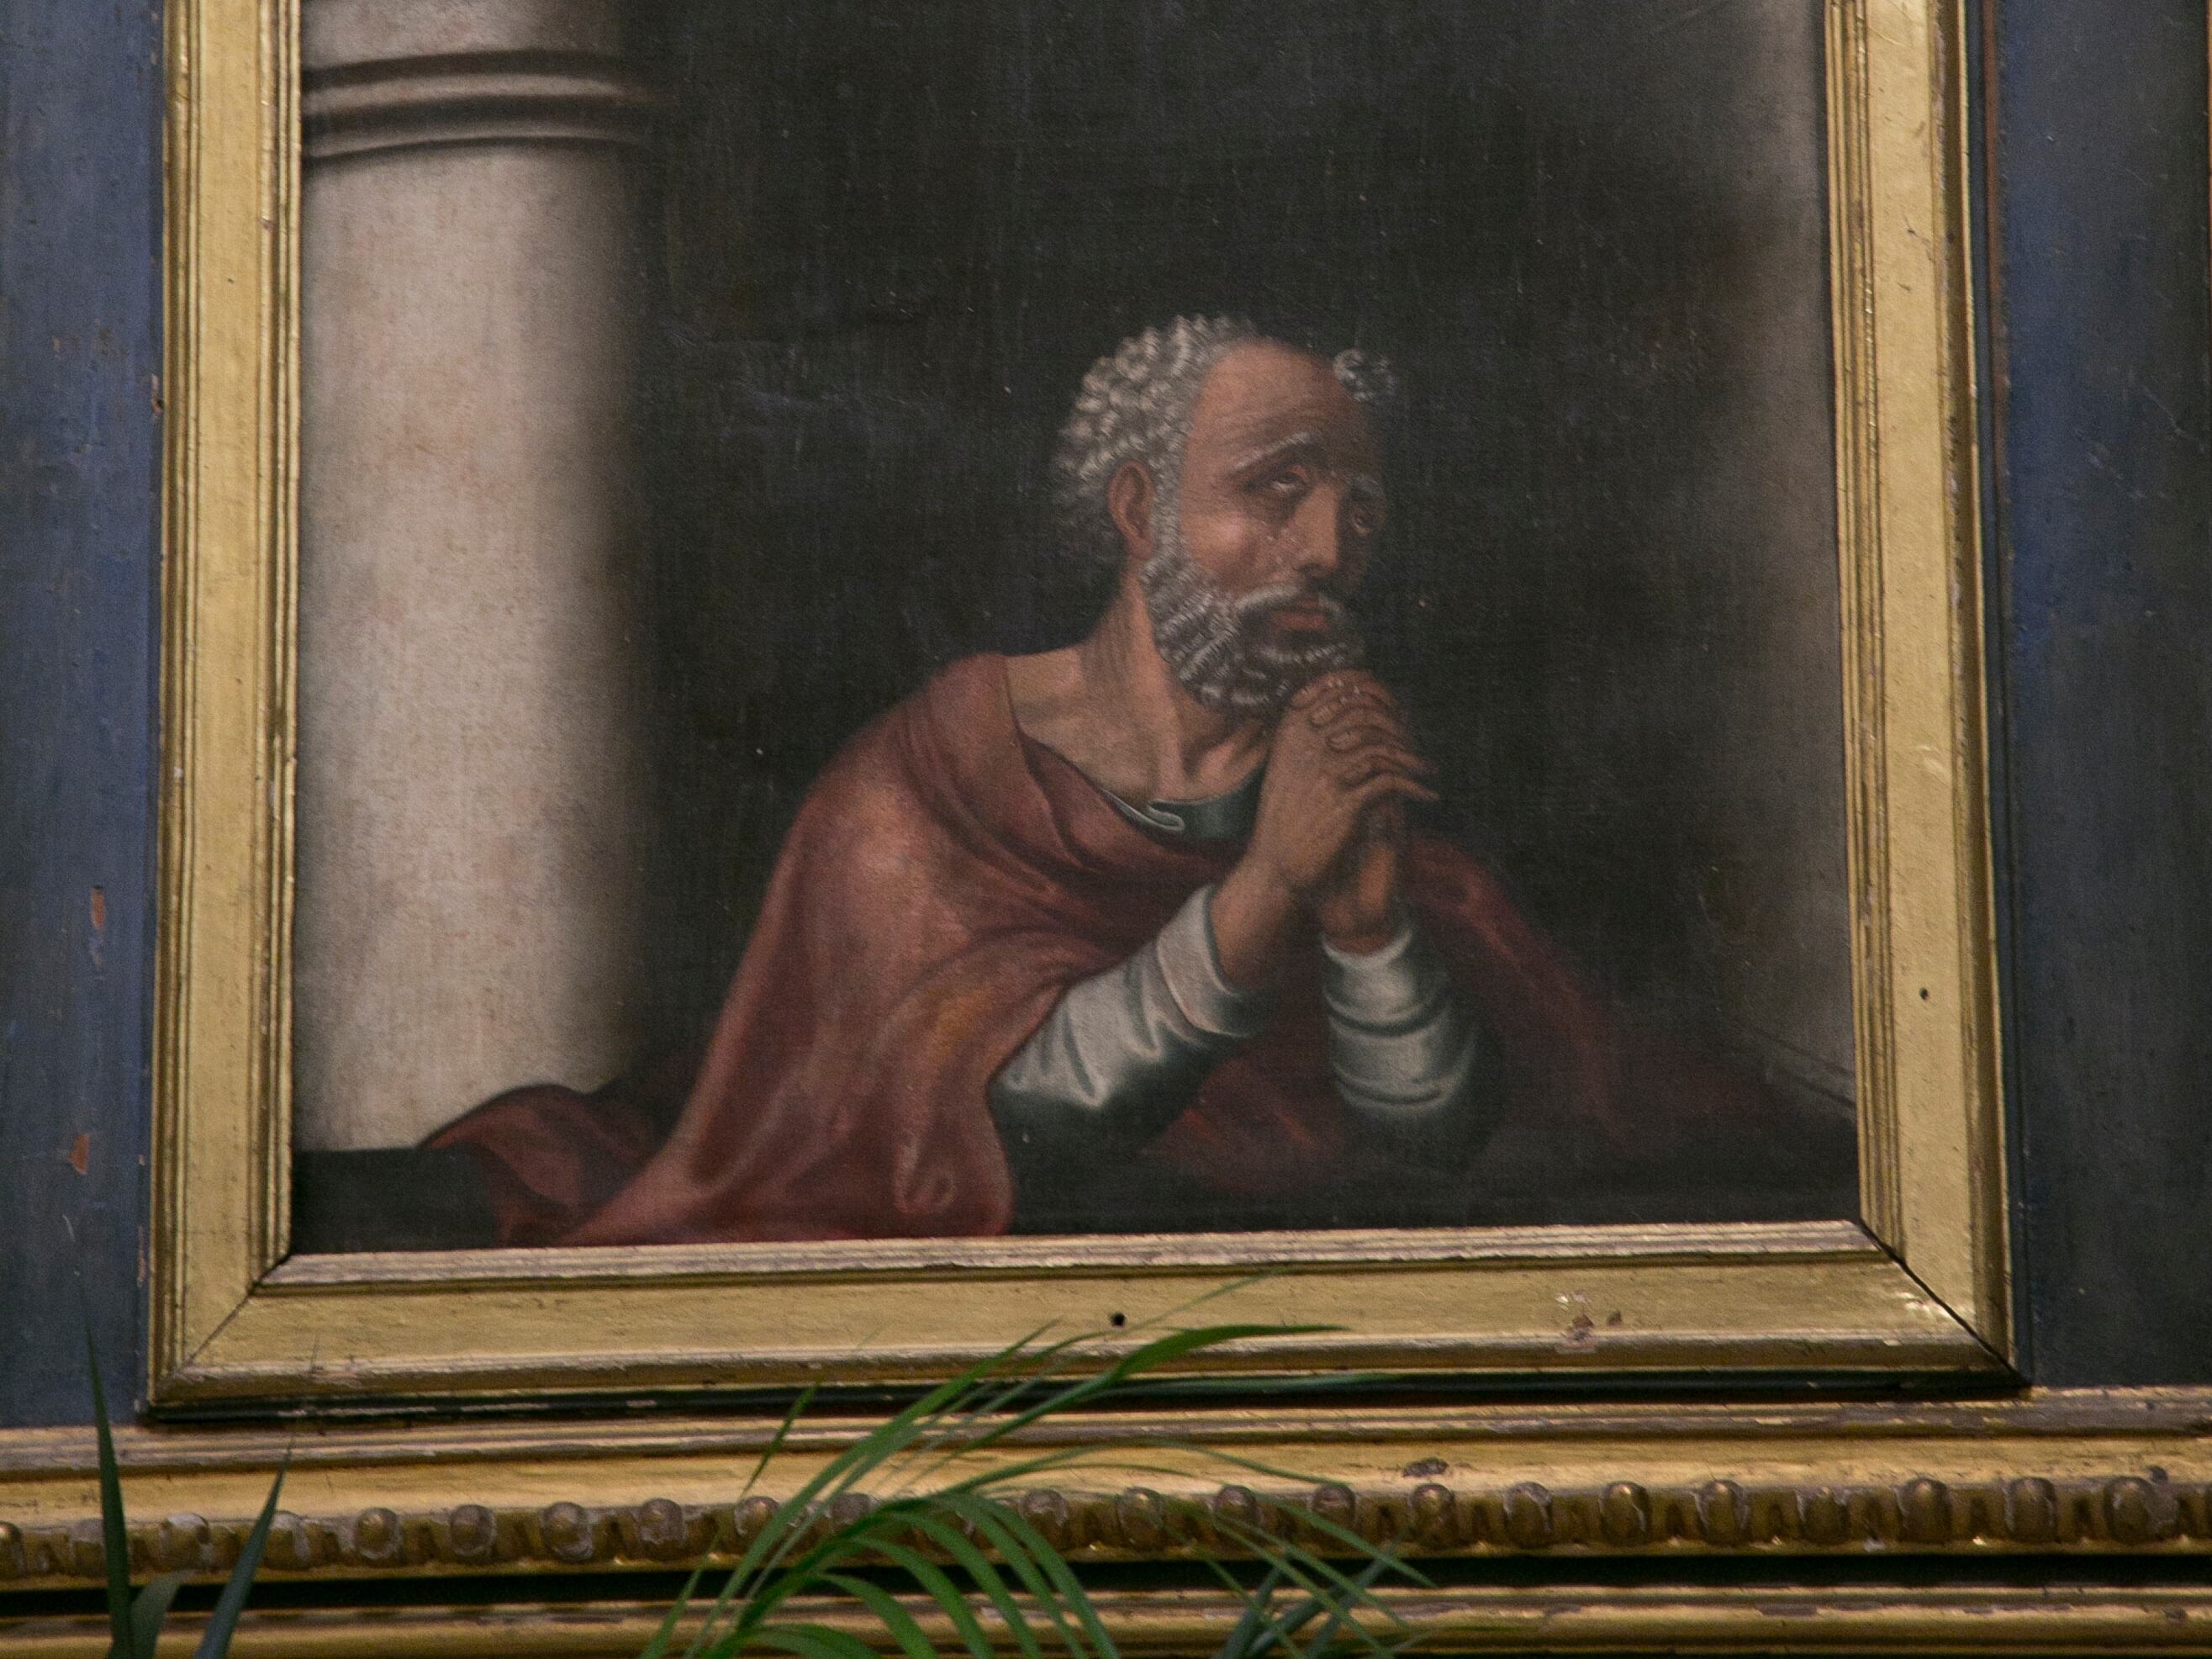 Las monjas creen que esta pintura en el retablo es un retrato de Pedro Pacheco.